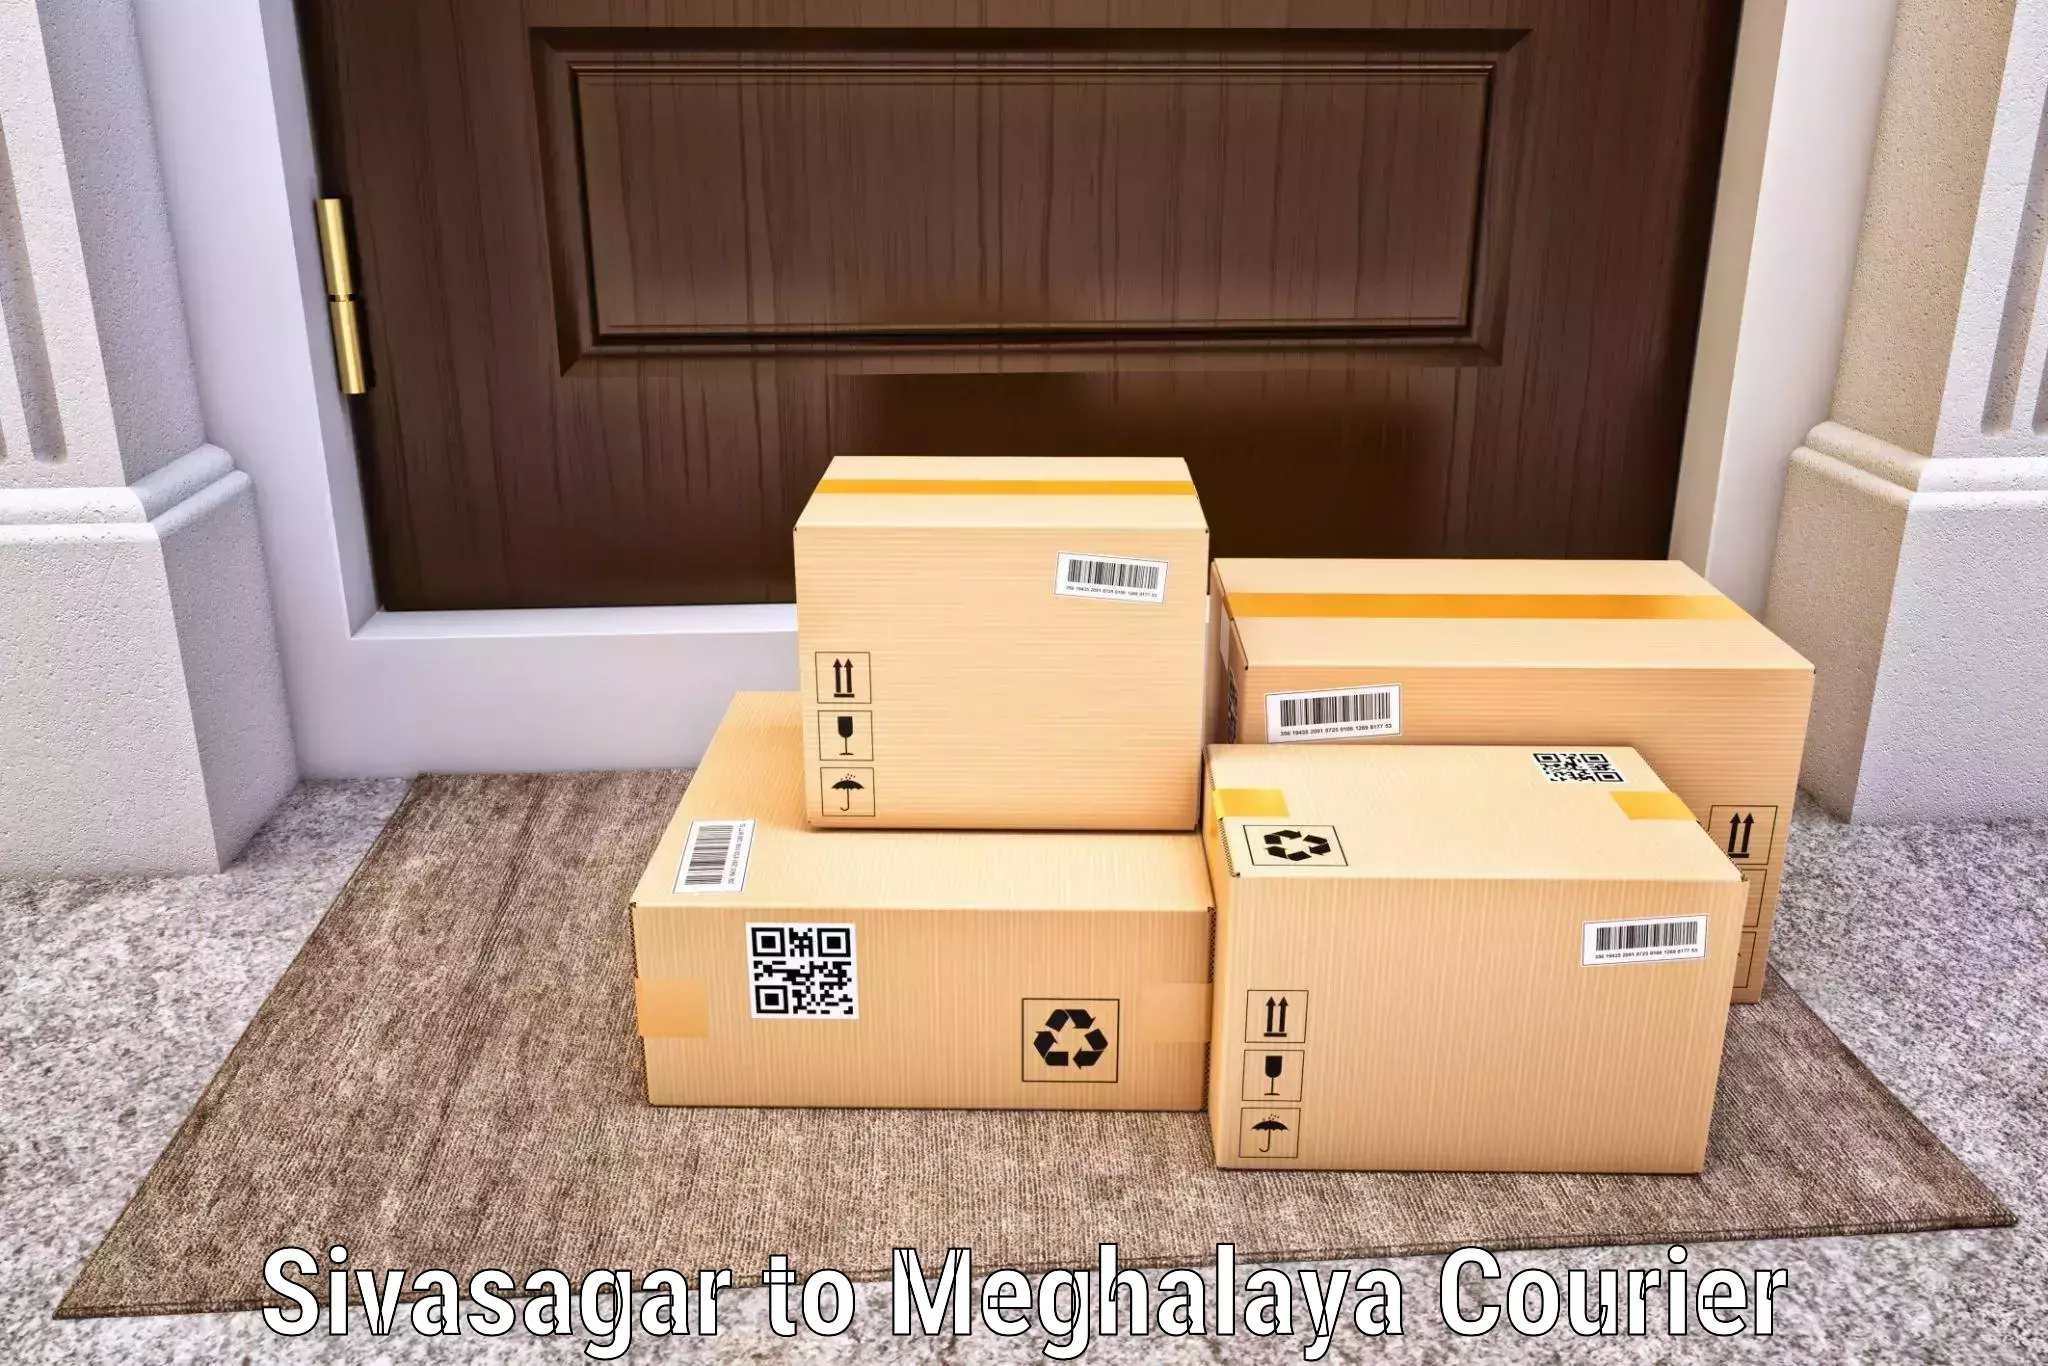 Personal parcel delivery Sivasagar to Ri Bhoi